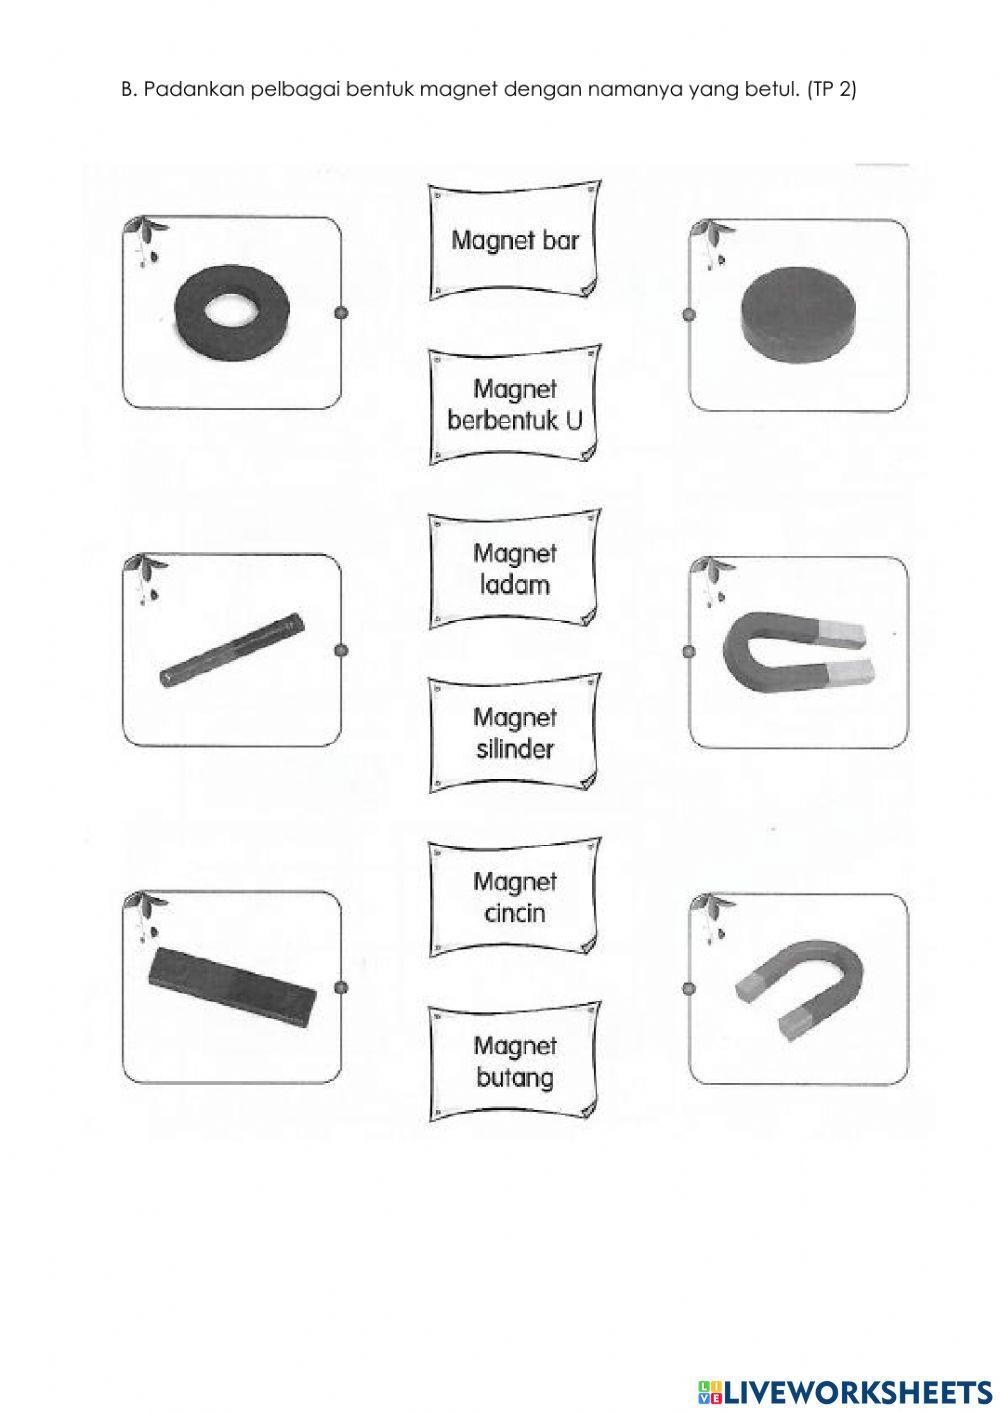 Kegunaan dan jenis magnet